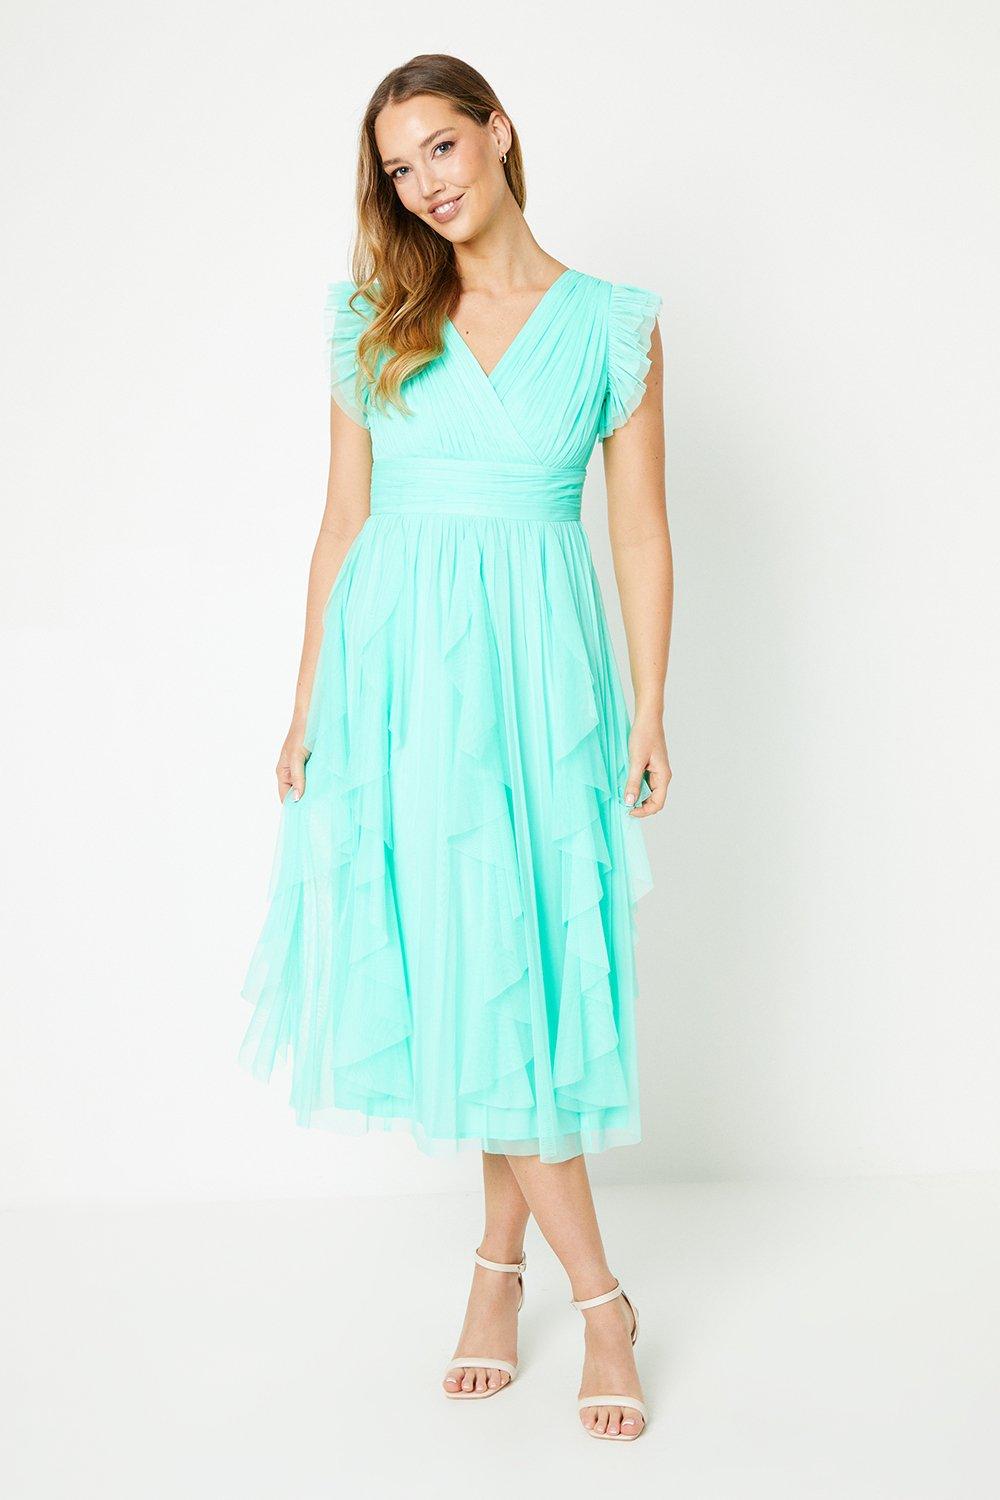 Ruffle Skirt Mesh Midi Dress - Turquoise